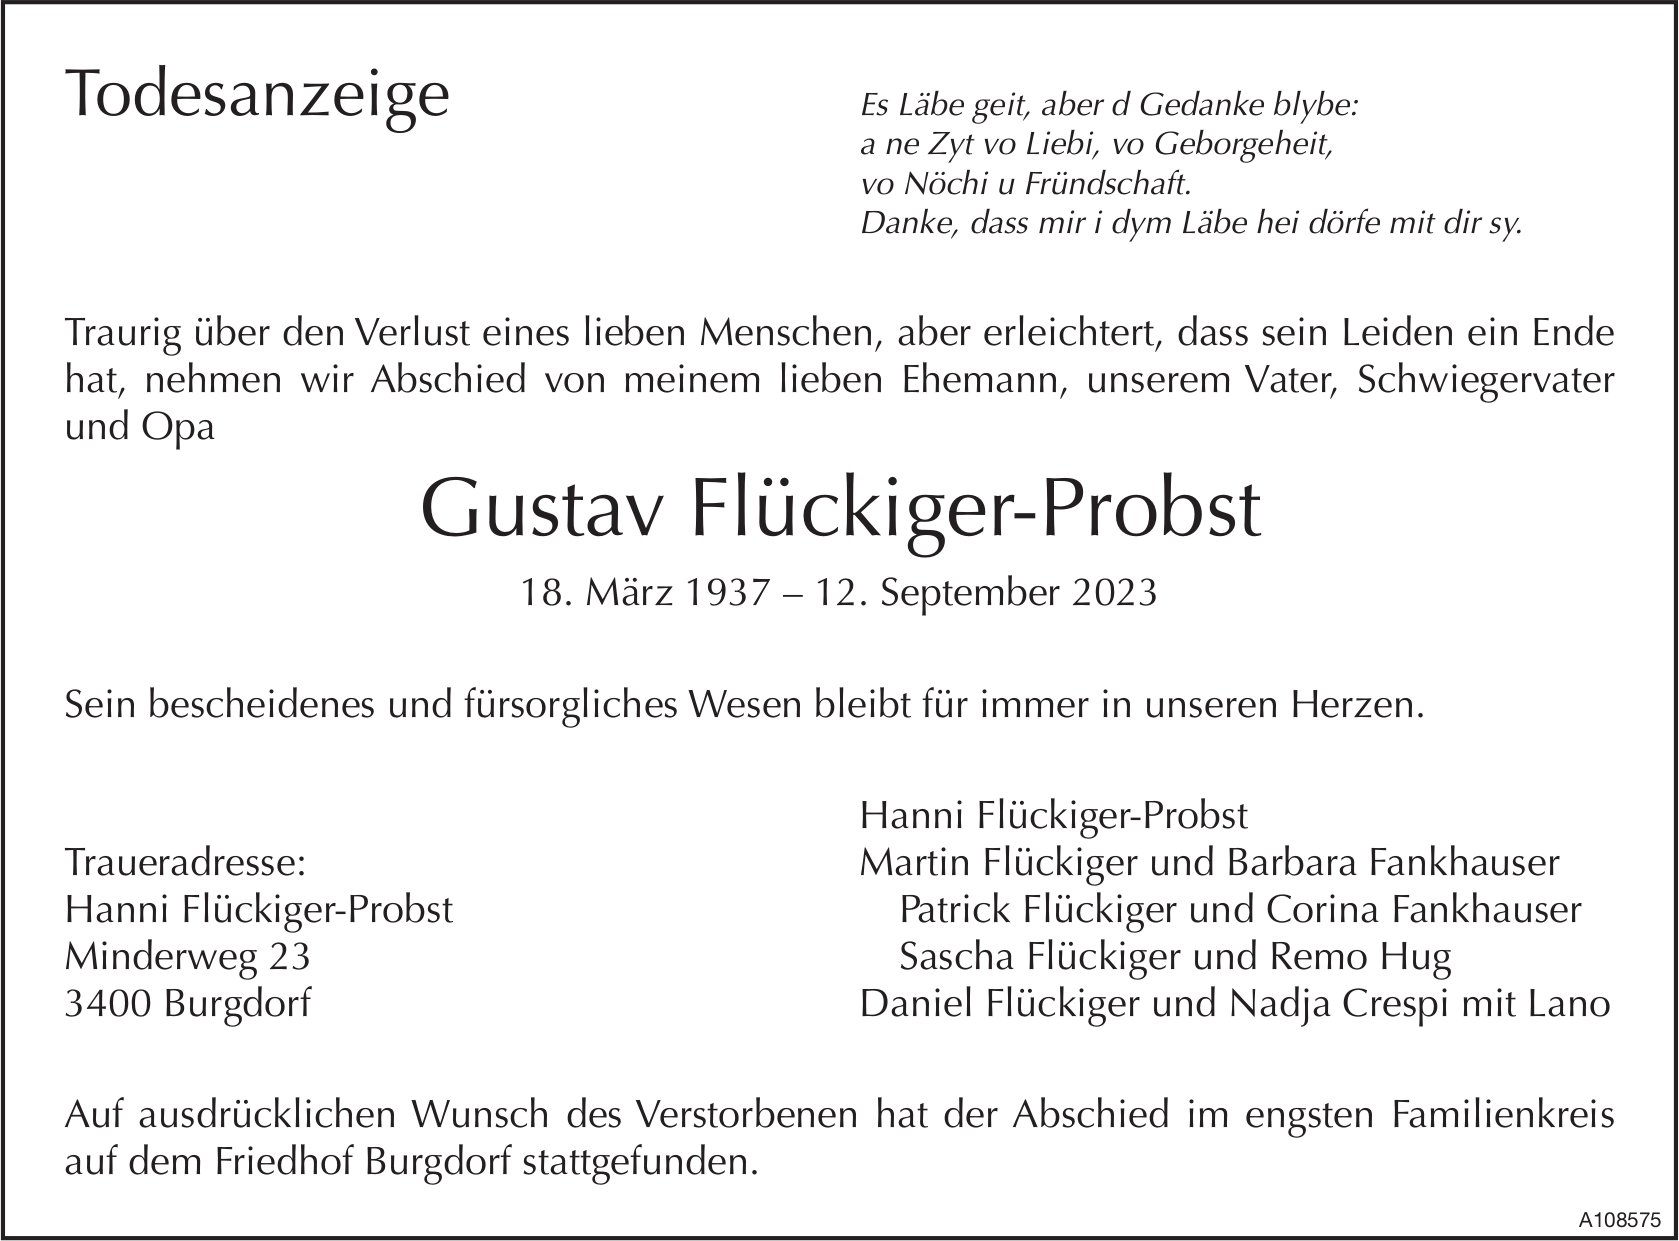 Gustav Flückiger-Probst, September 2023 / TA